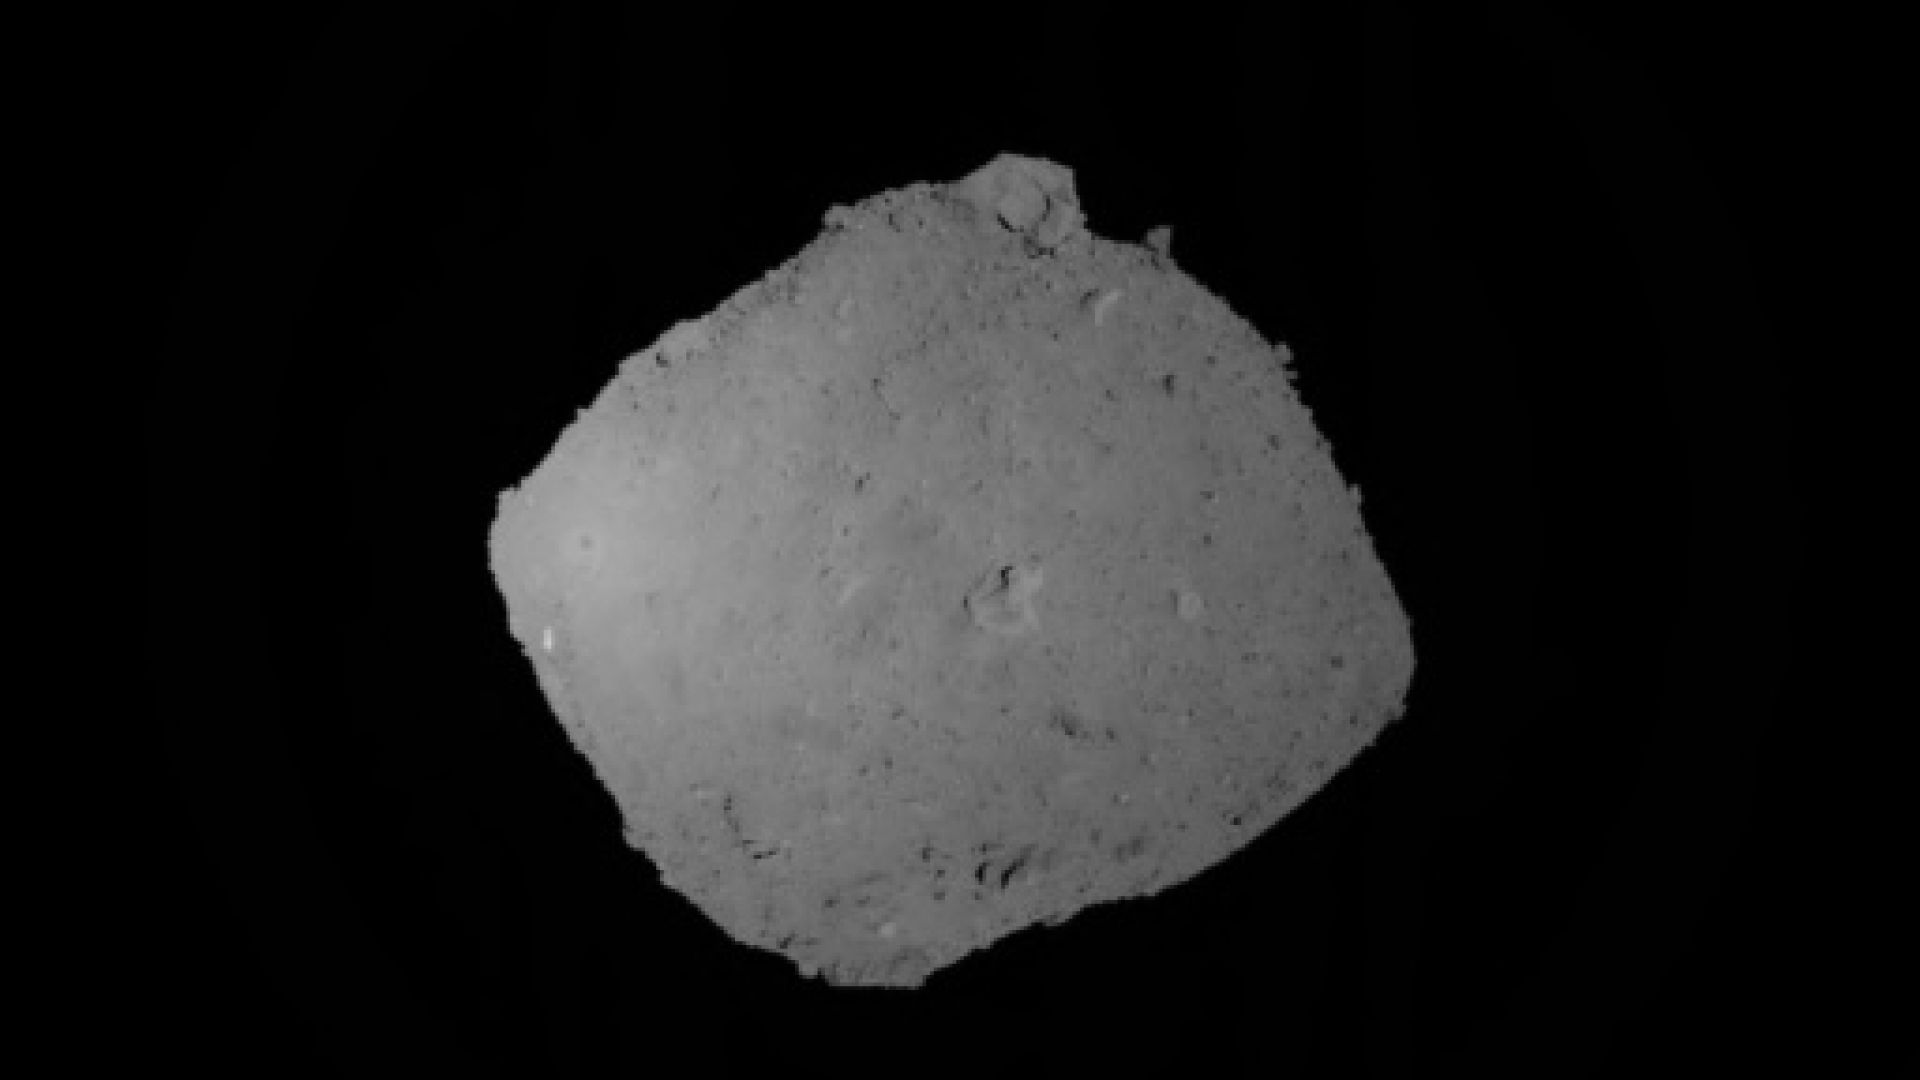 Скоро започва подробното изучаването на проби от астероида Рюгу